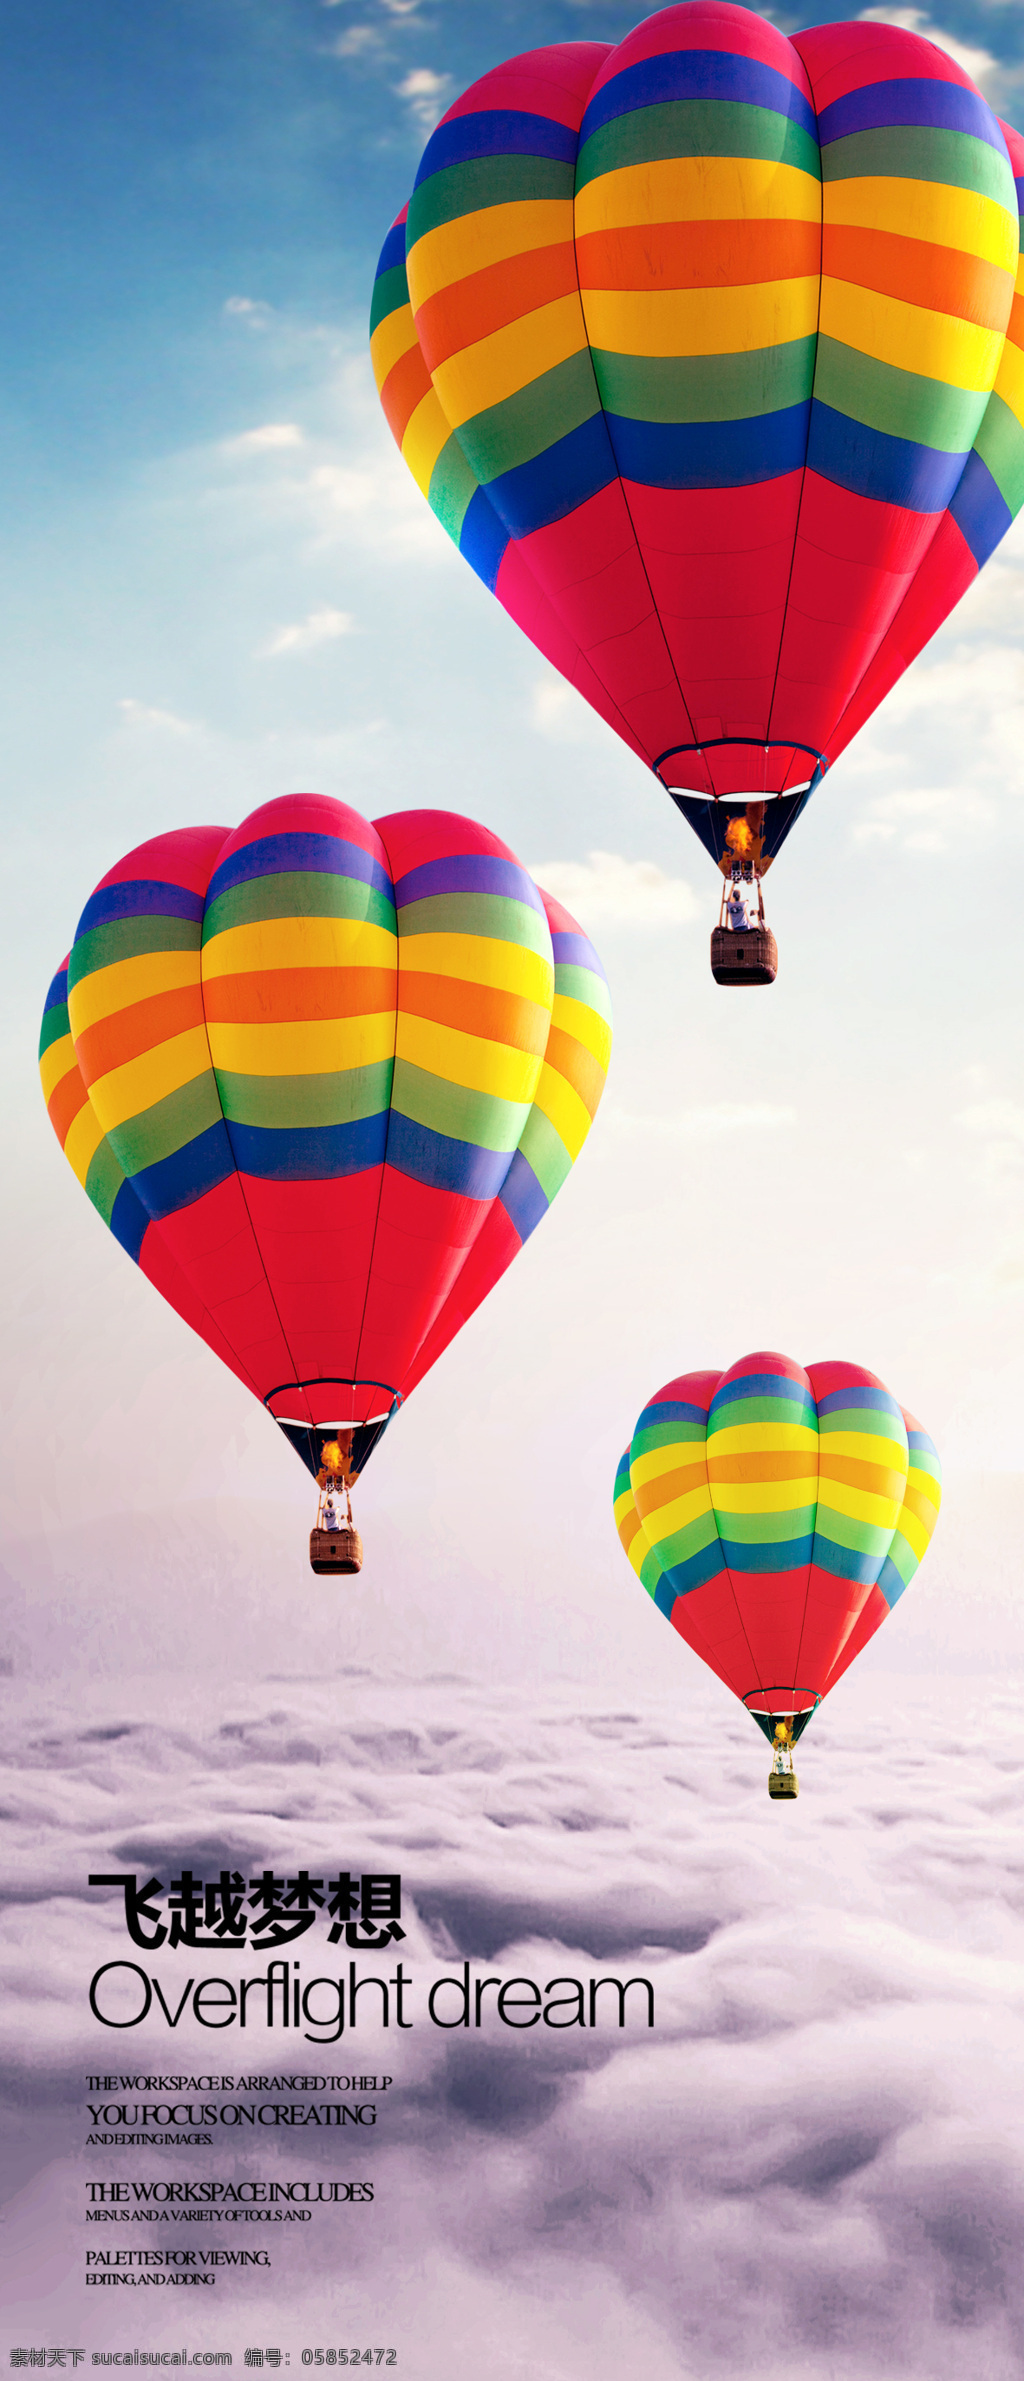 飞越 梦想 氢气球 彩色气球 创意广告 理想 云 飞越梦想 psd源文件